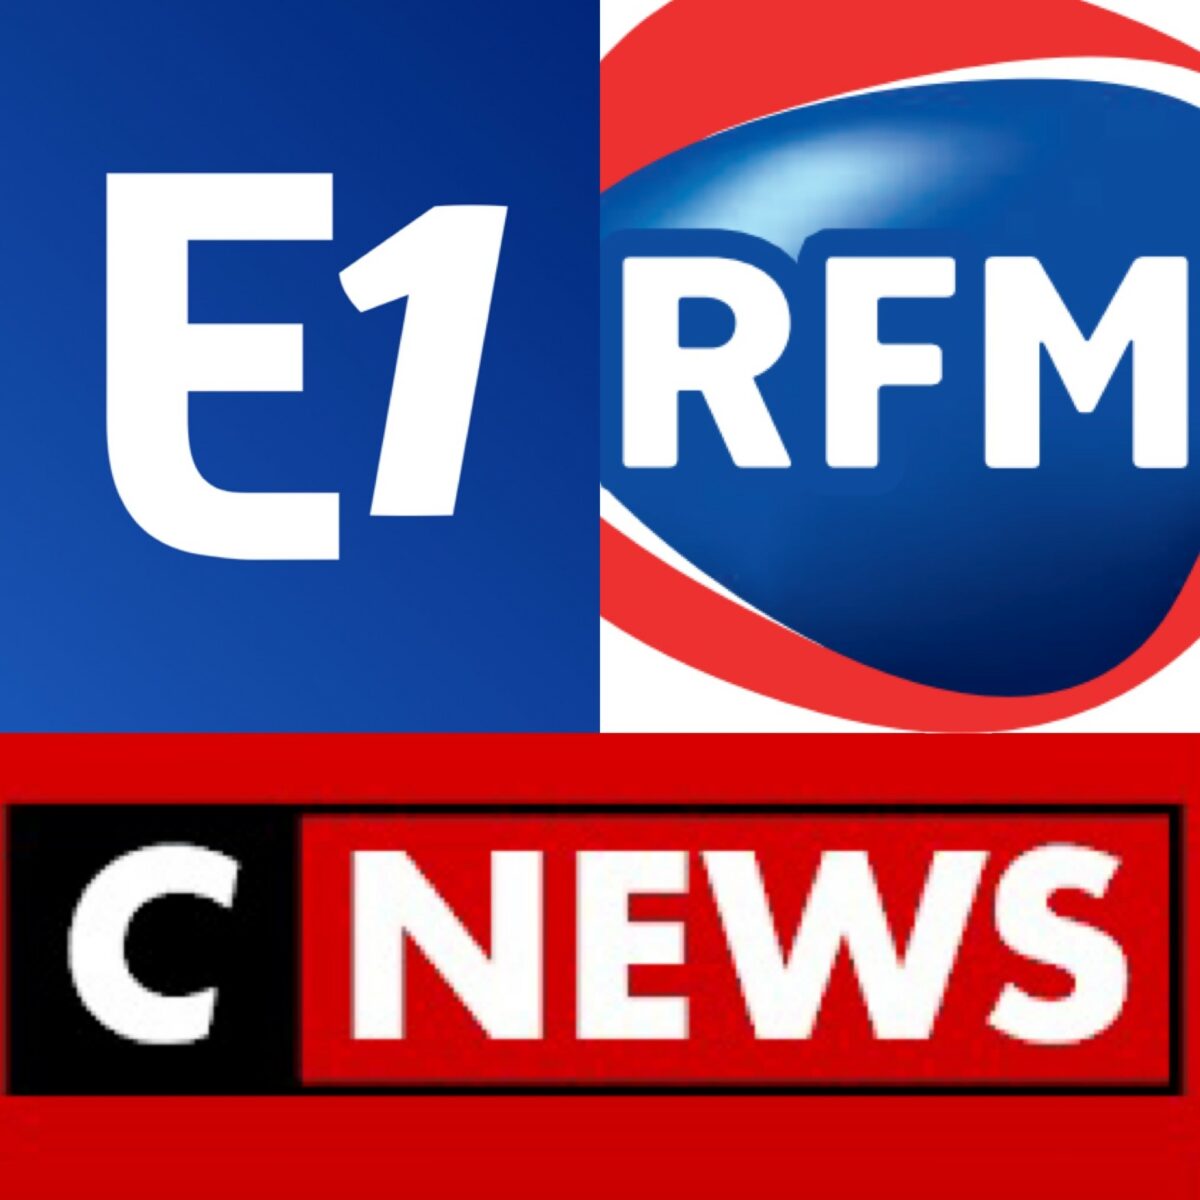 L’importance médiatique française : Europe 1, RFM, CNews